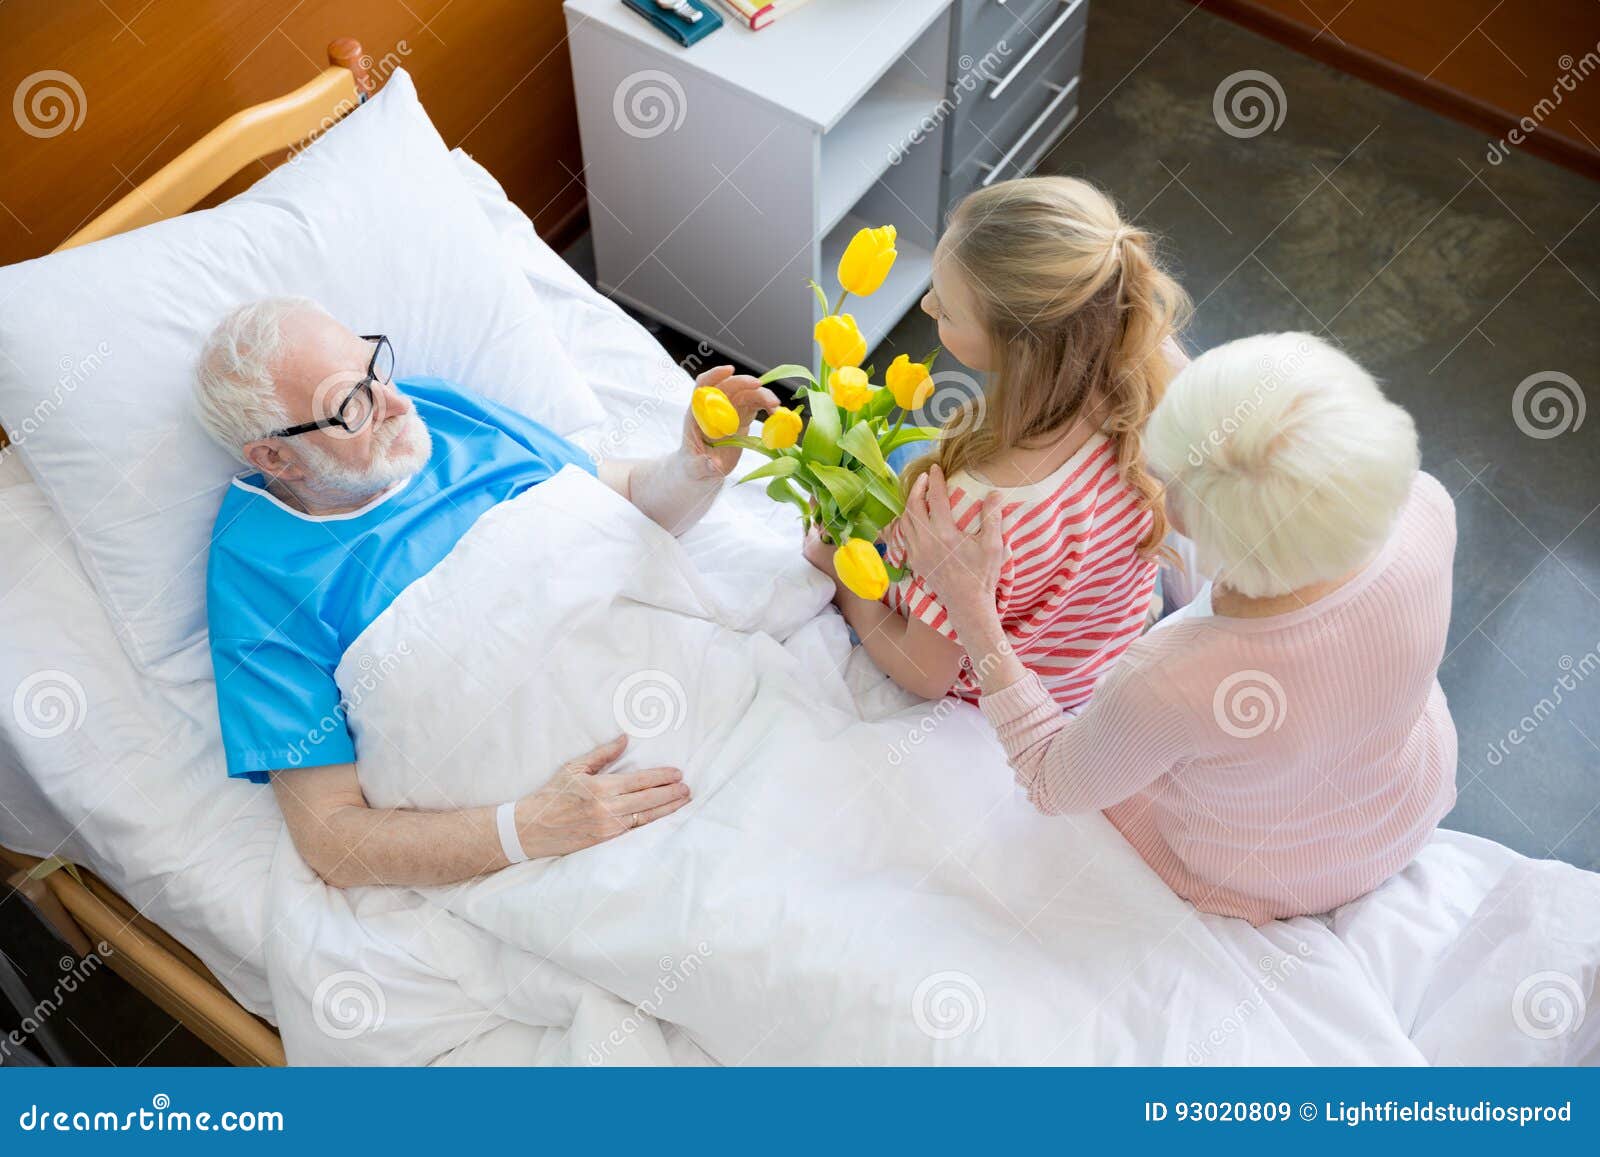 Навестить пациента. Навестить больного. Навестил бабушку в больницей. Проведать пациента.